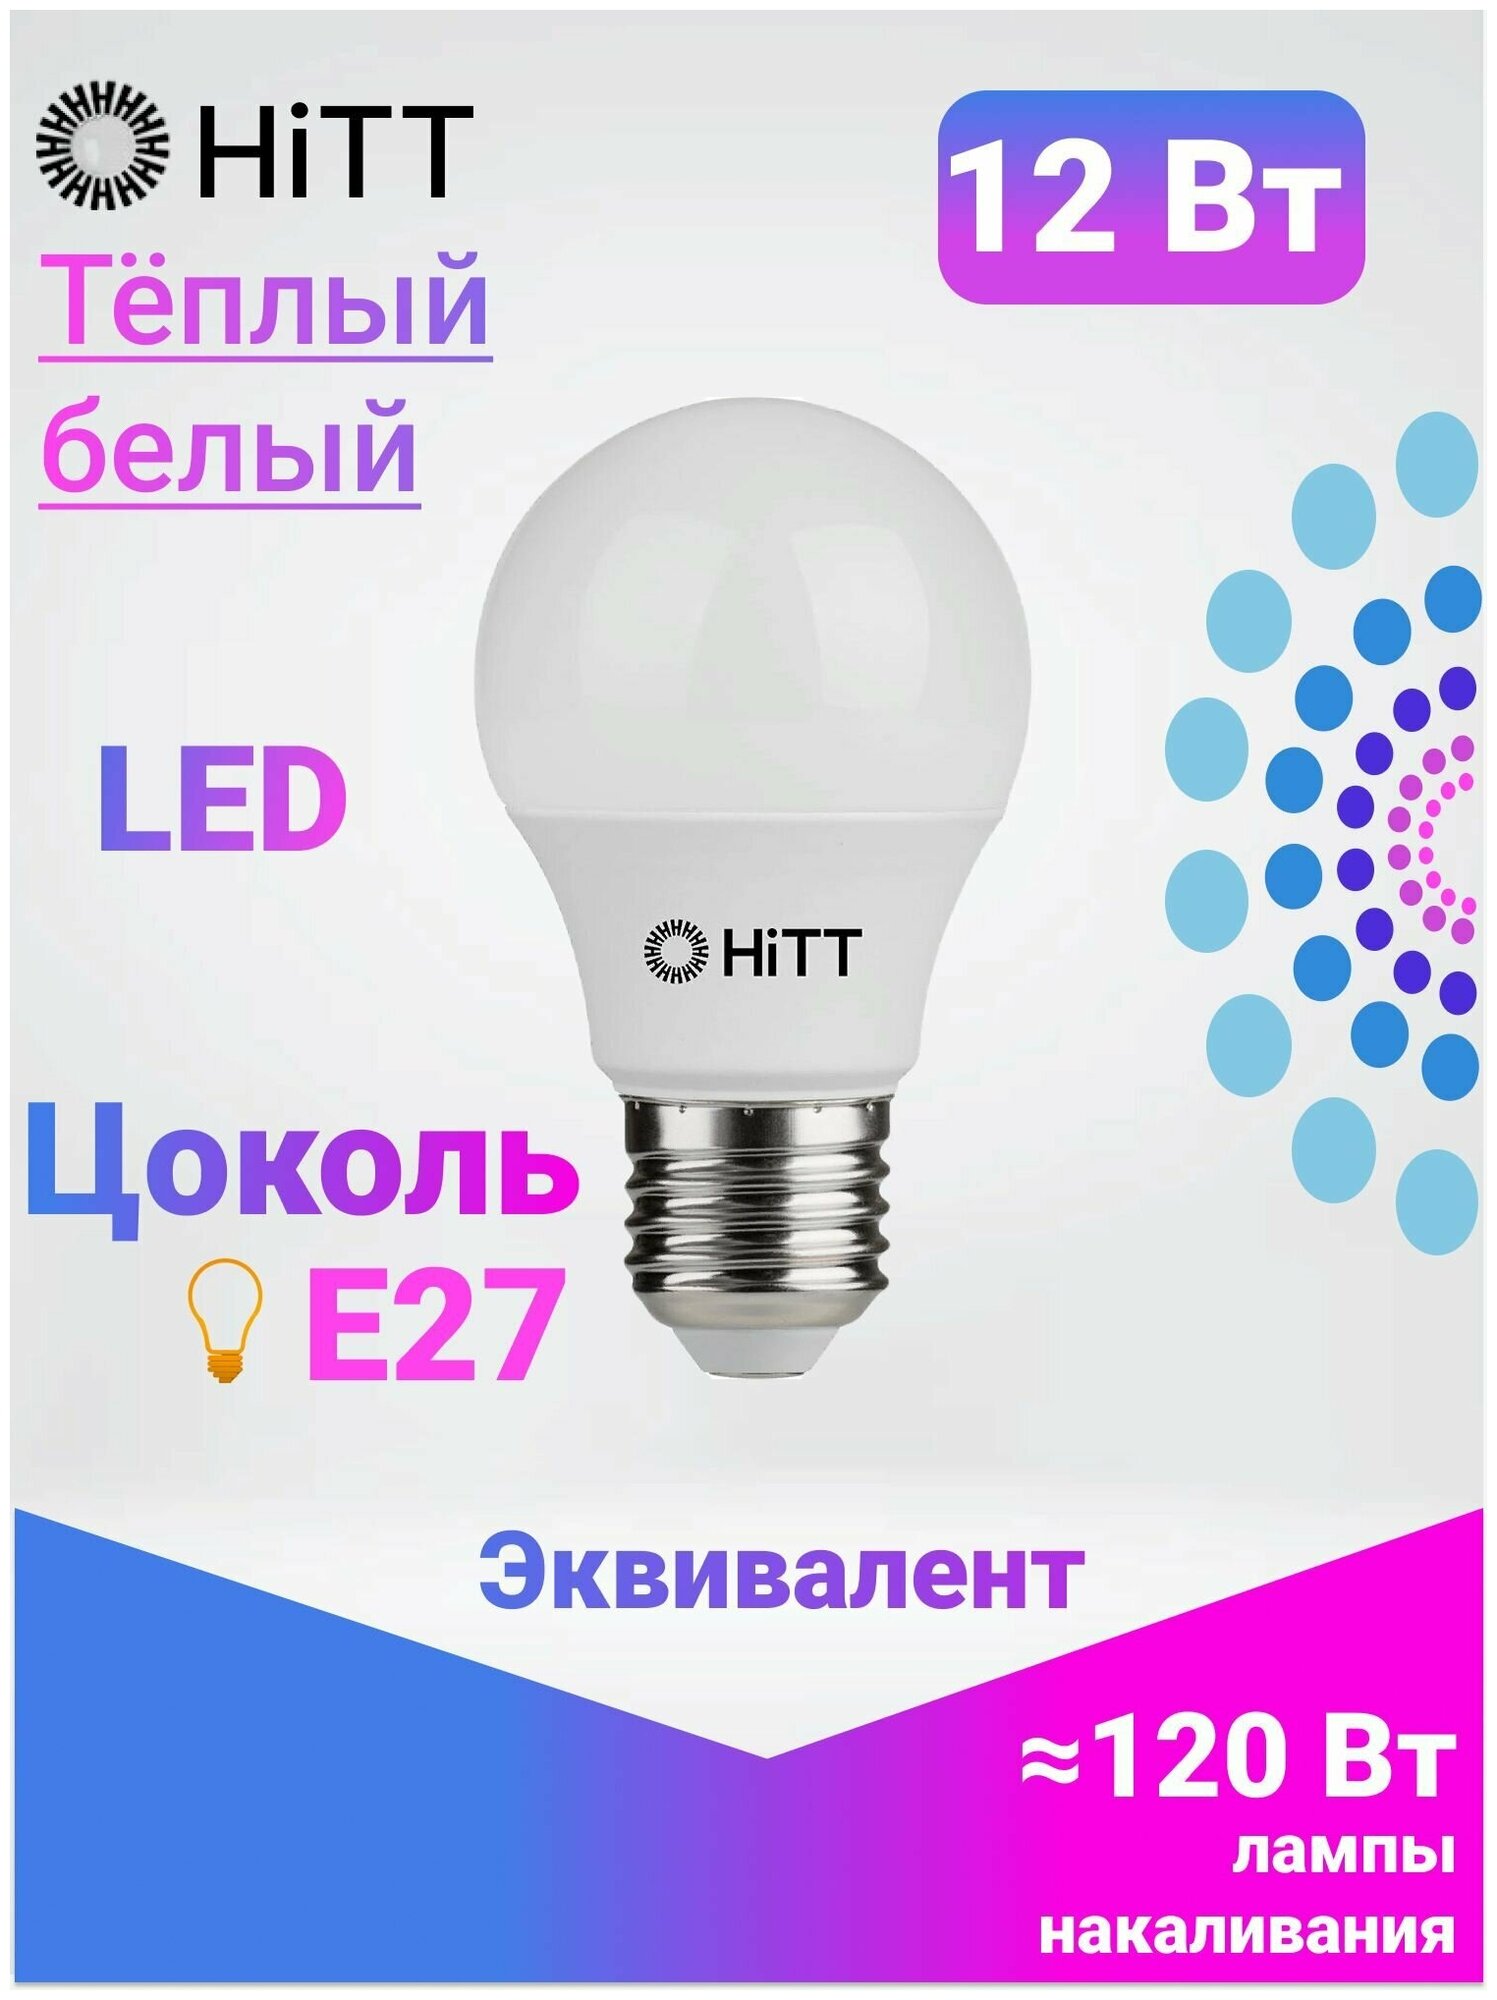 Энергоэффективная светодиодная лампа HiTT 12Вт E27 3000к